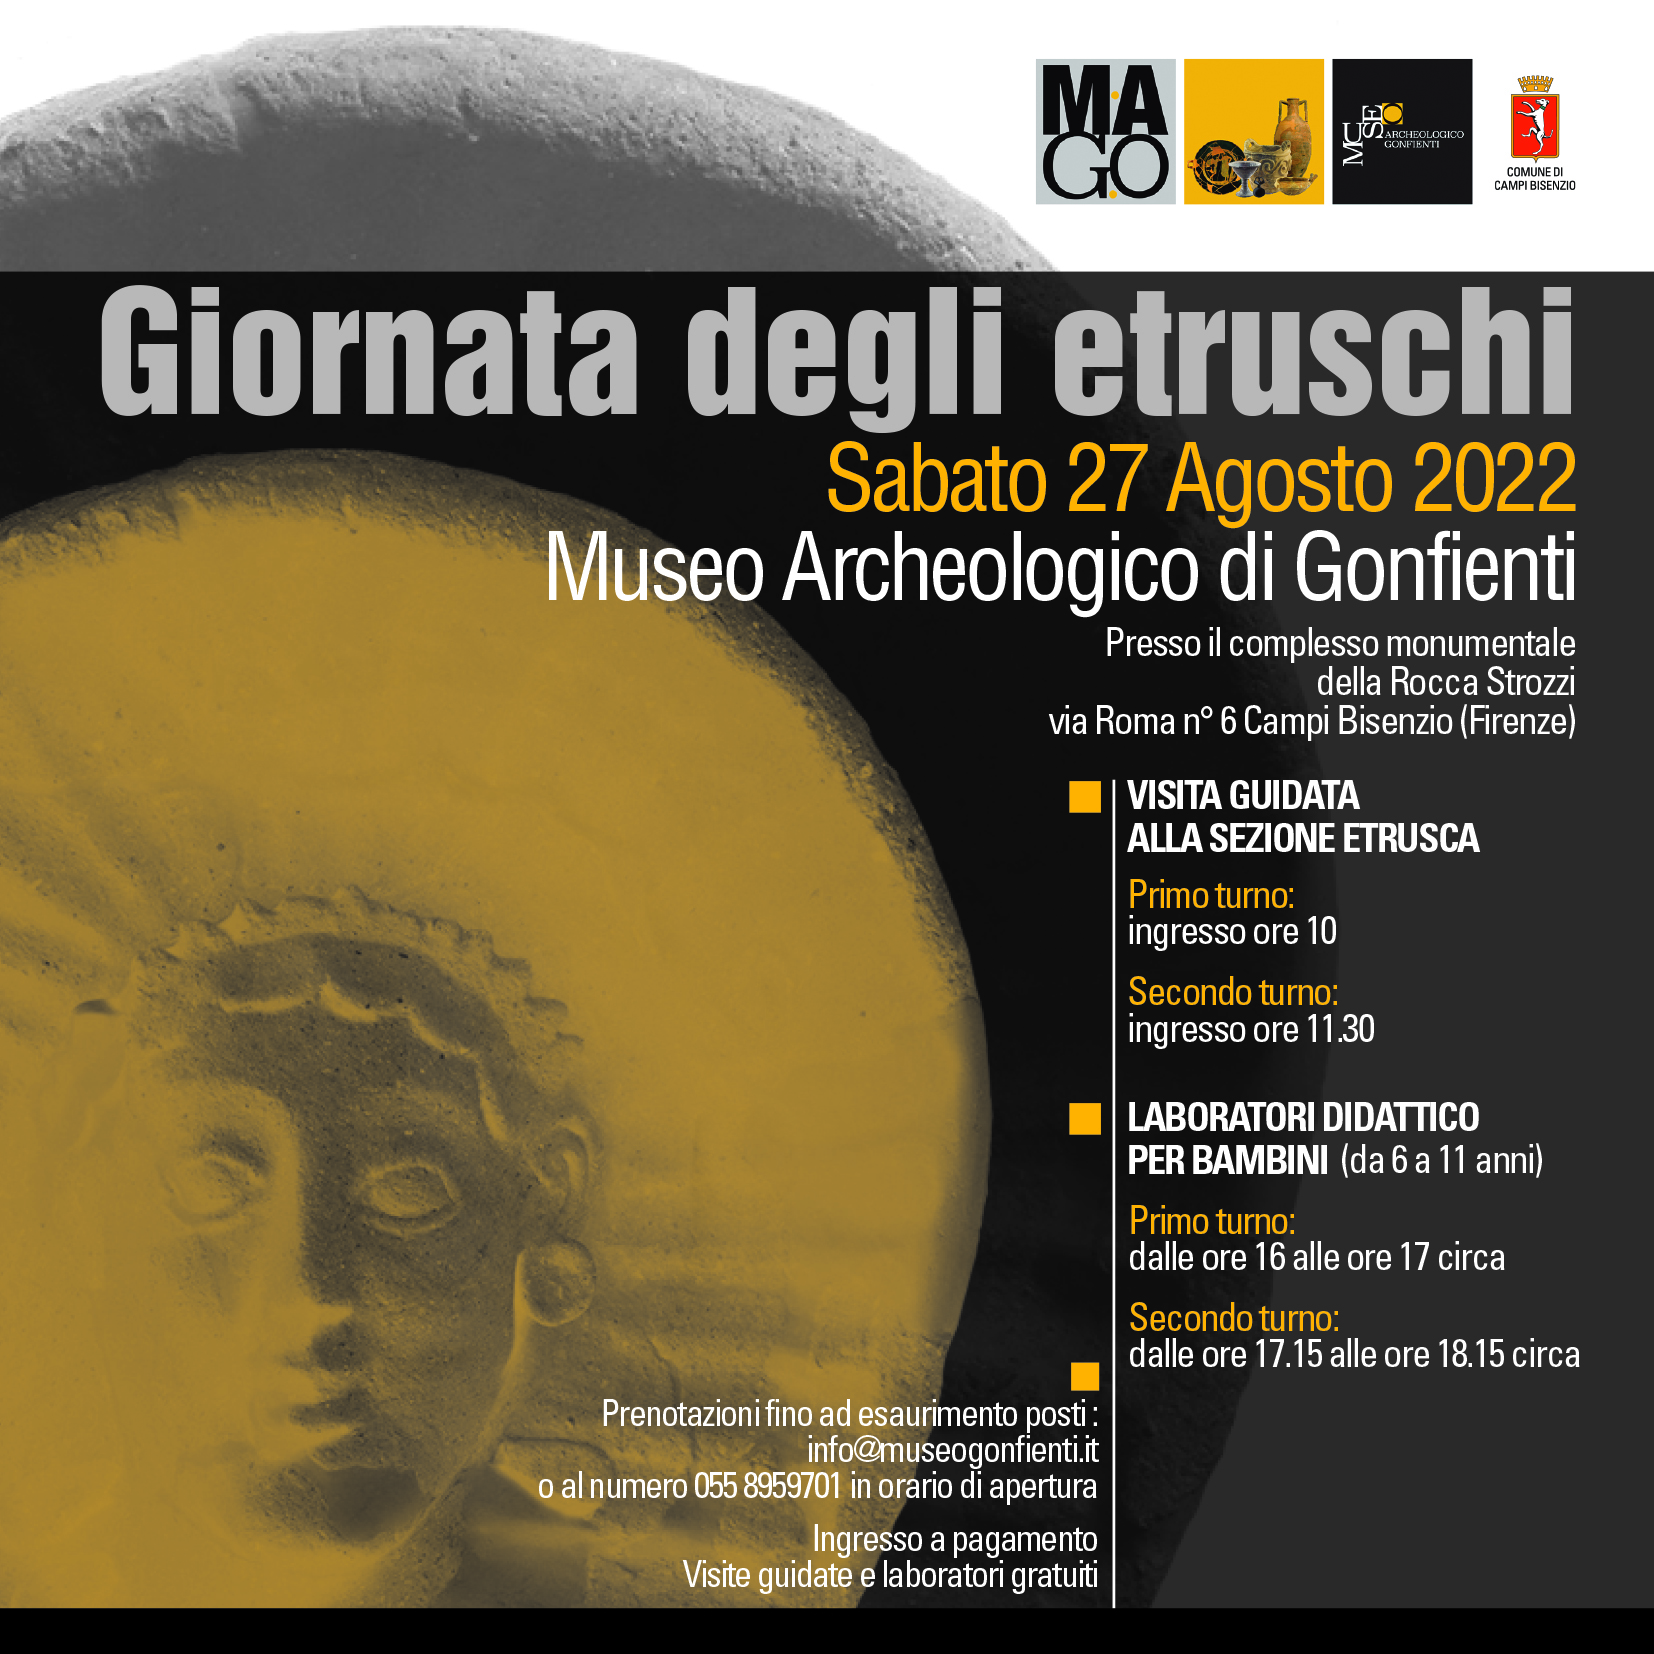 pubblicita` giornata Etruschi - fonte Comune di Campi Bisenzio